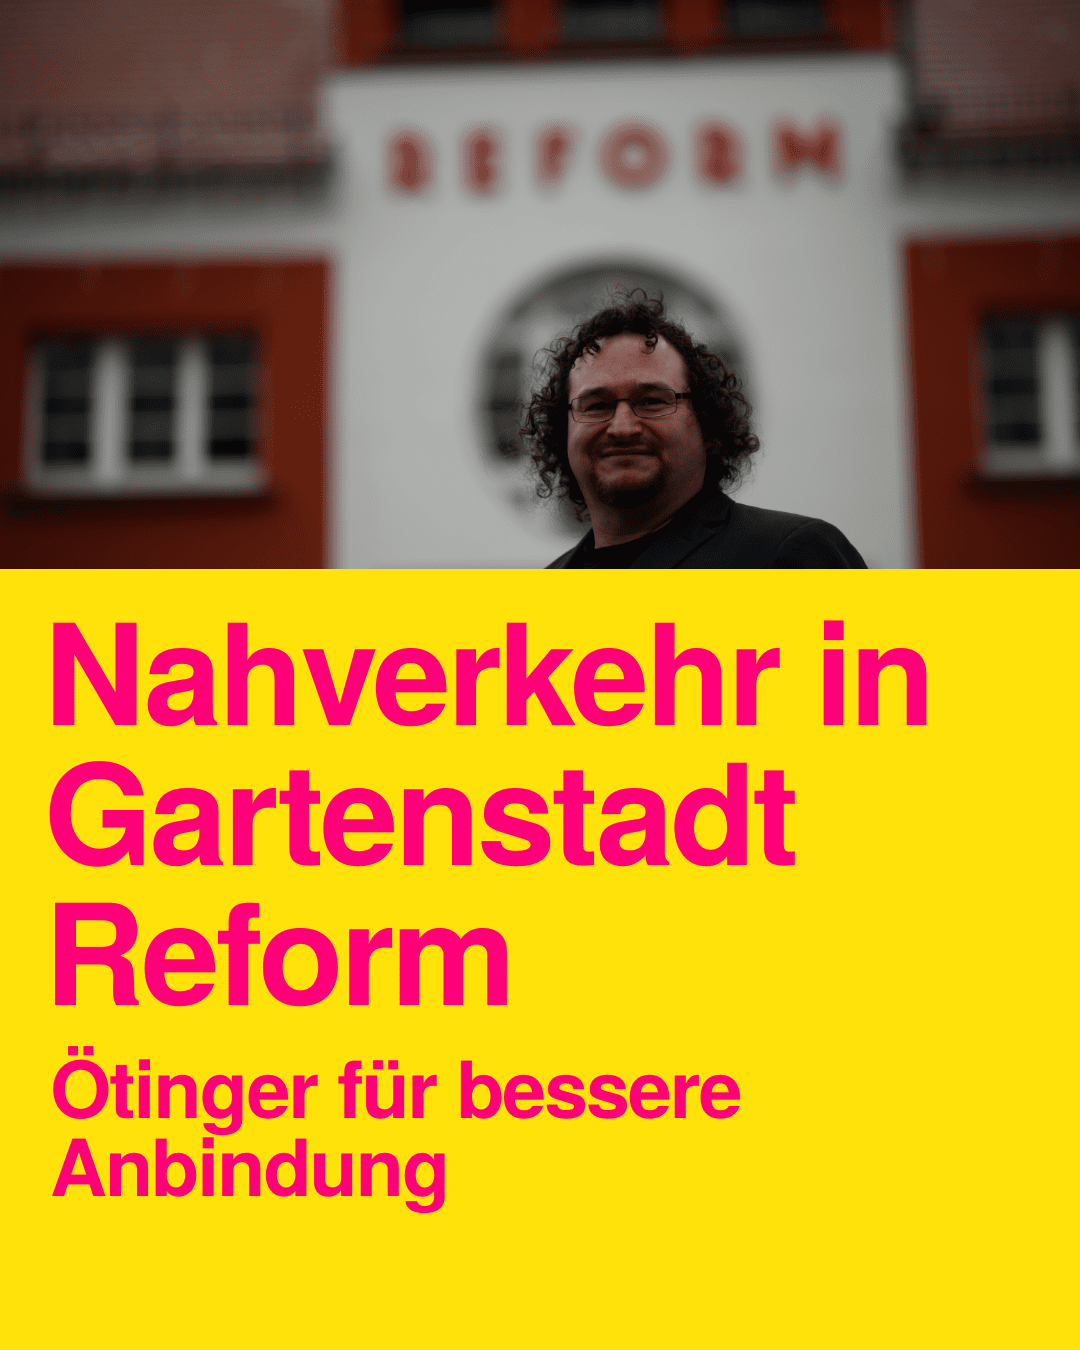 Nahverkehr Reform Gartenstadt- Stev Ötinger für bessere Anbindung